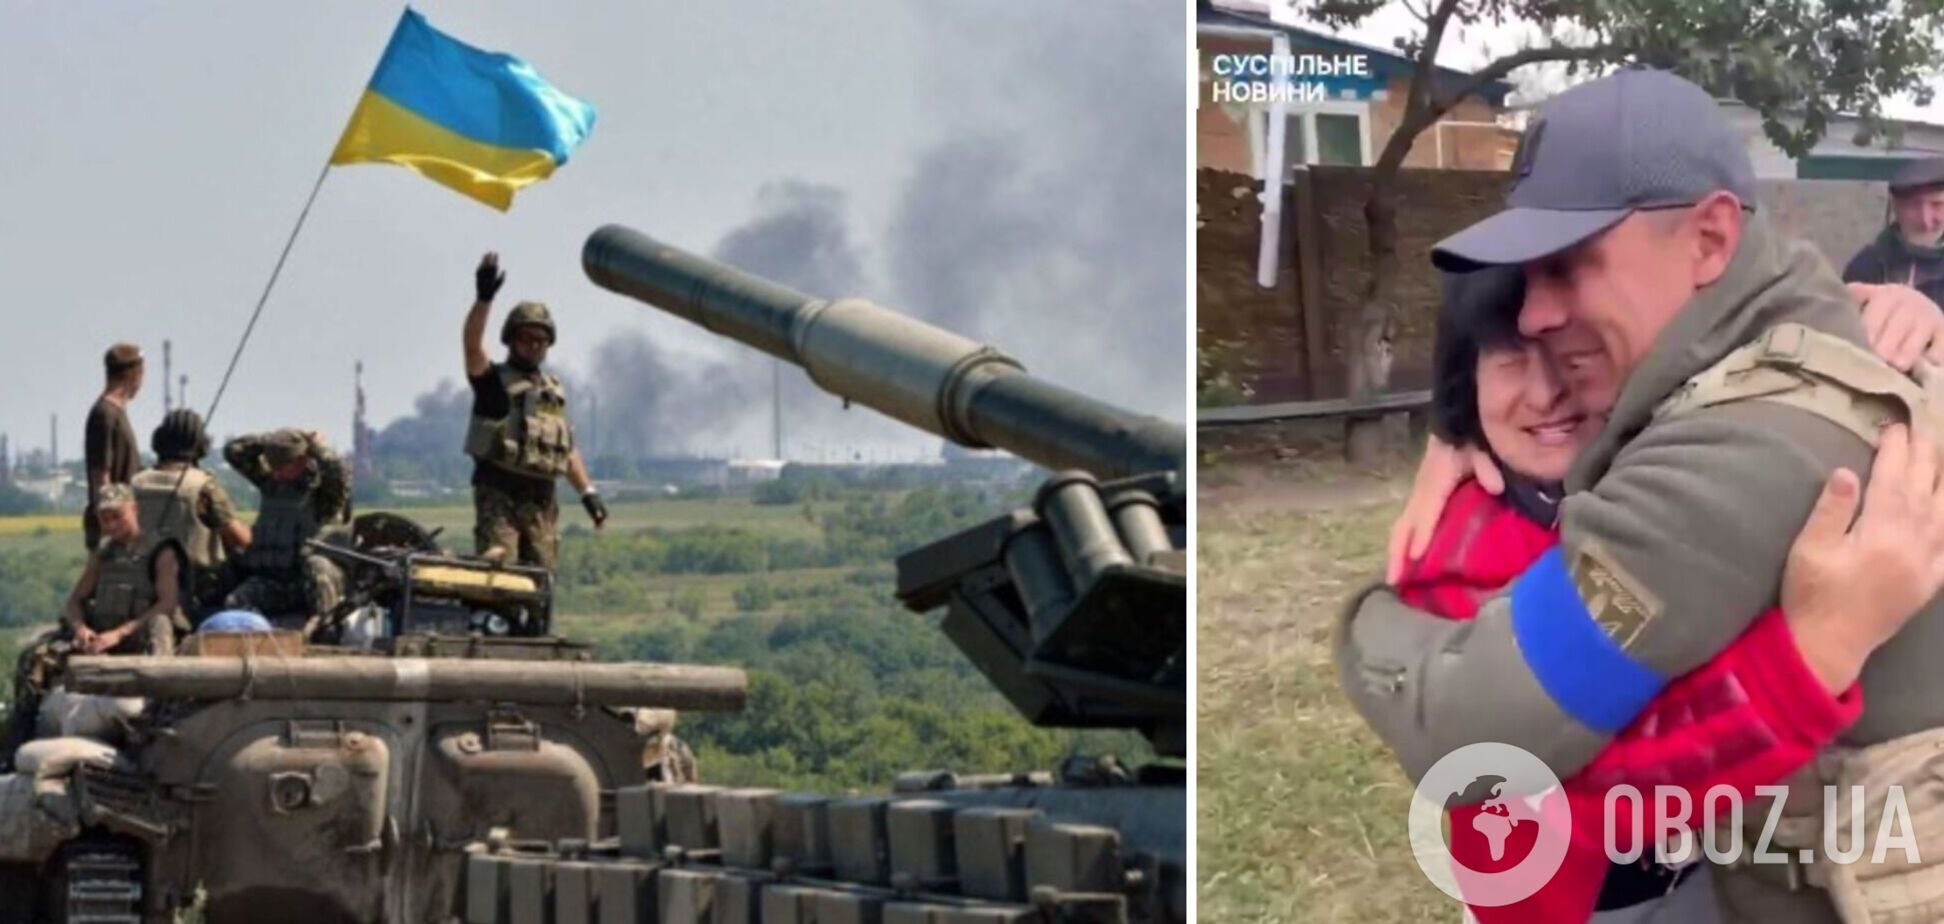 'Я ждала, что ты придешь': момент встречи защитника Украины с мамой в освобожденном селе показали на видео